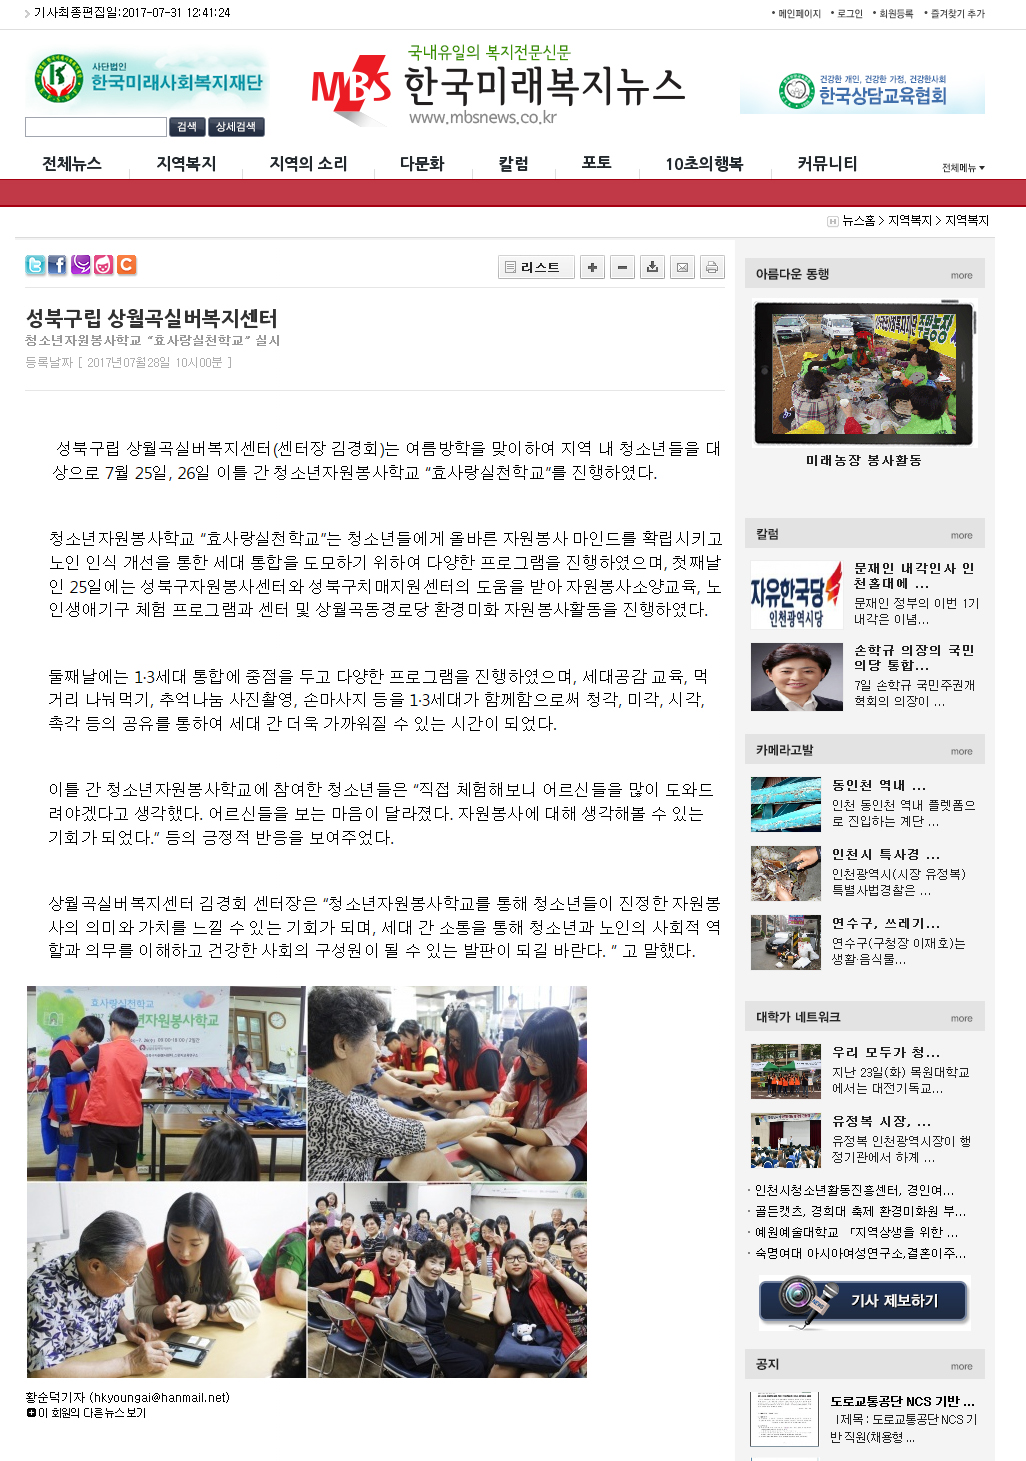 (170728)청소년자원봉사학교(한국미래복지뉴스).jpg